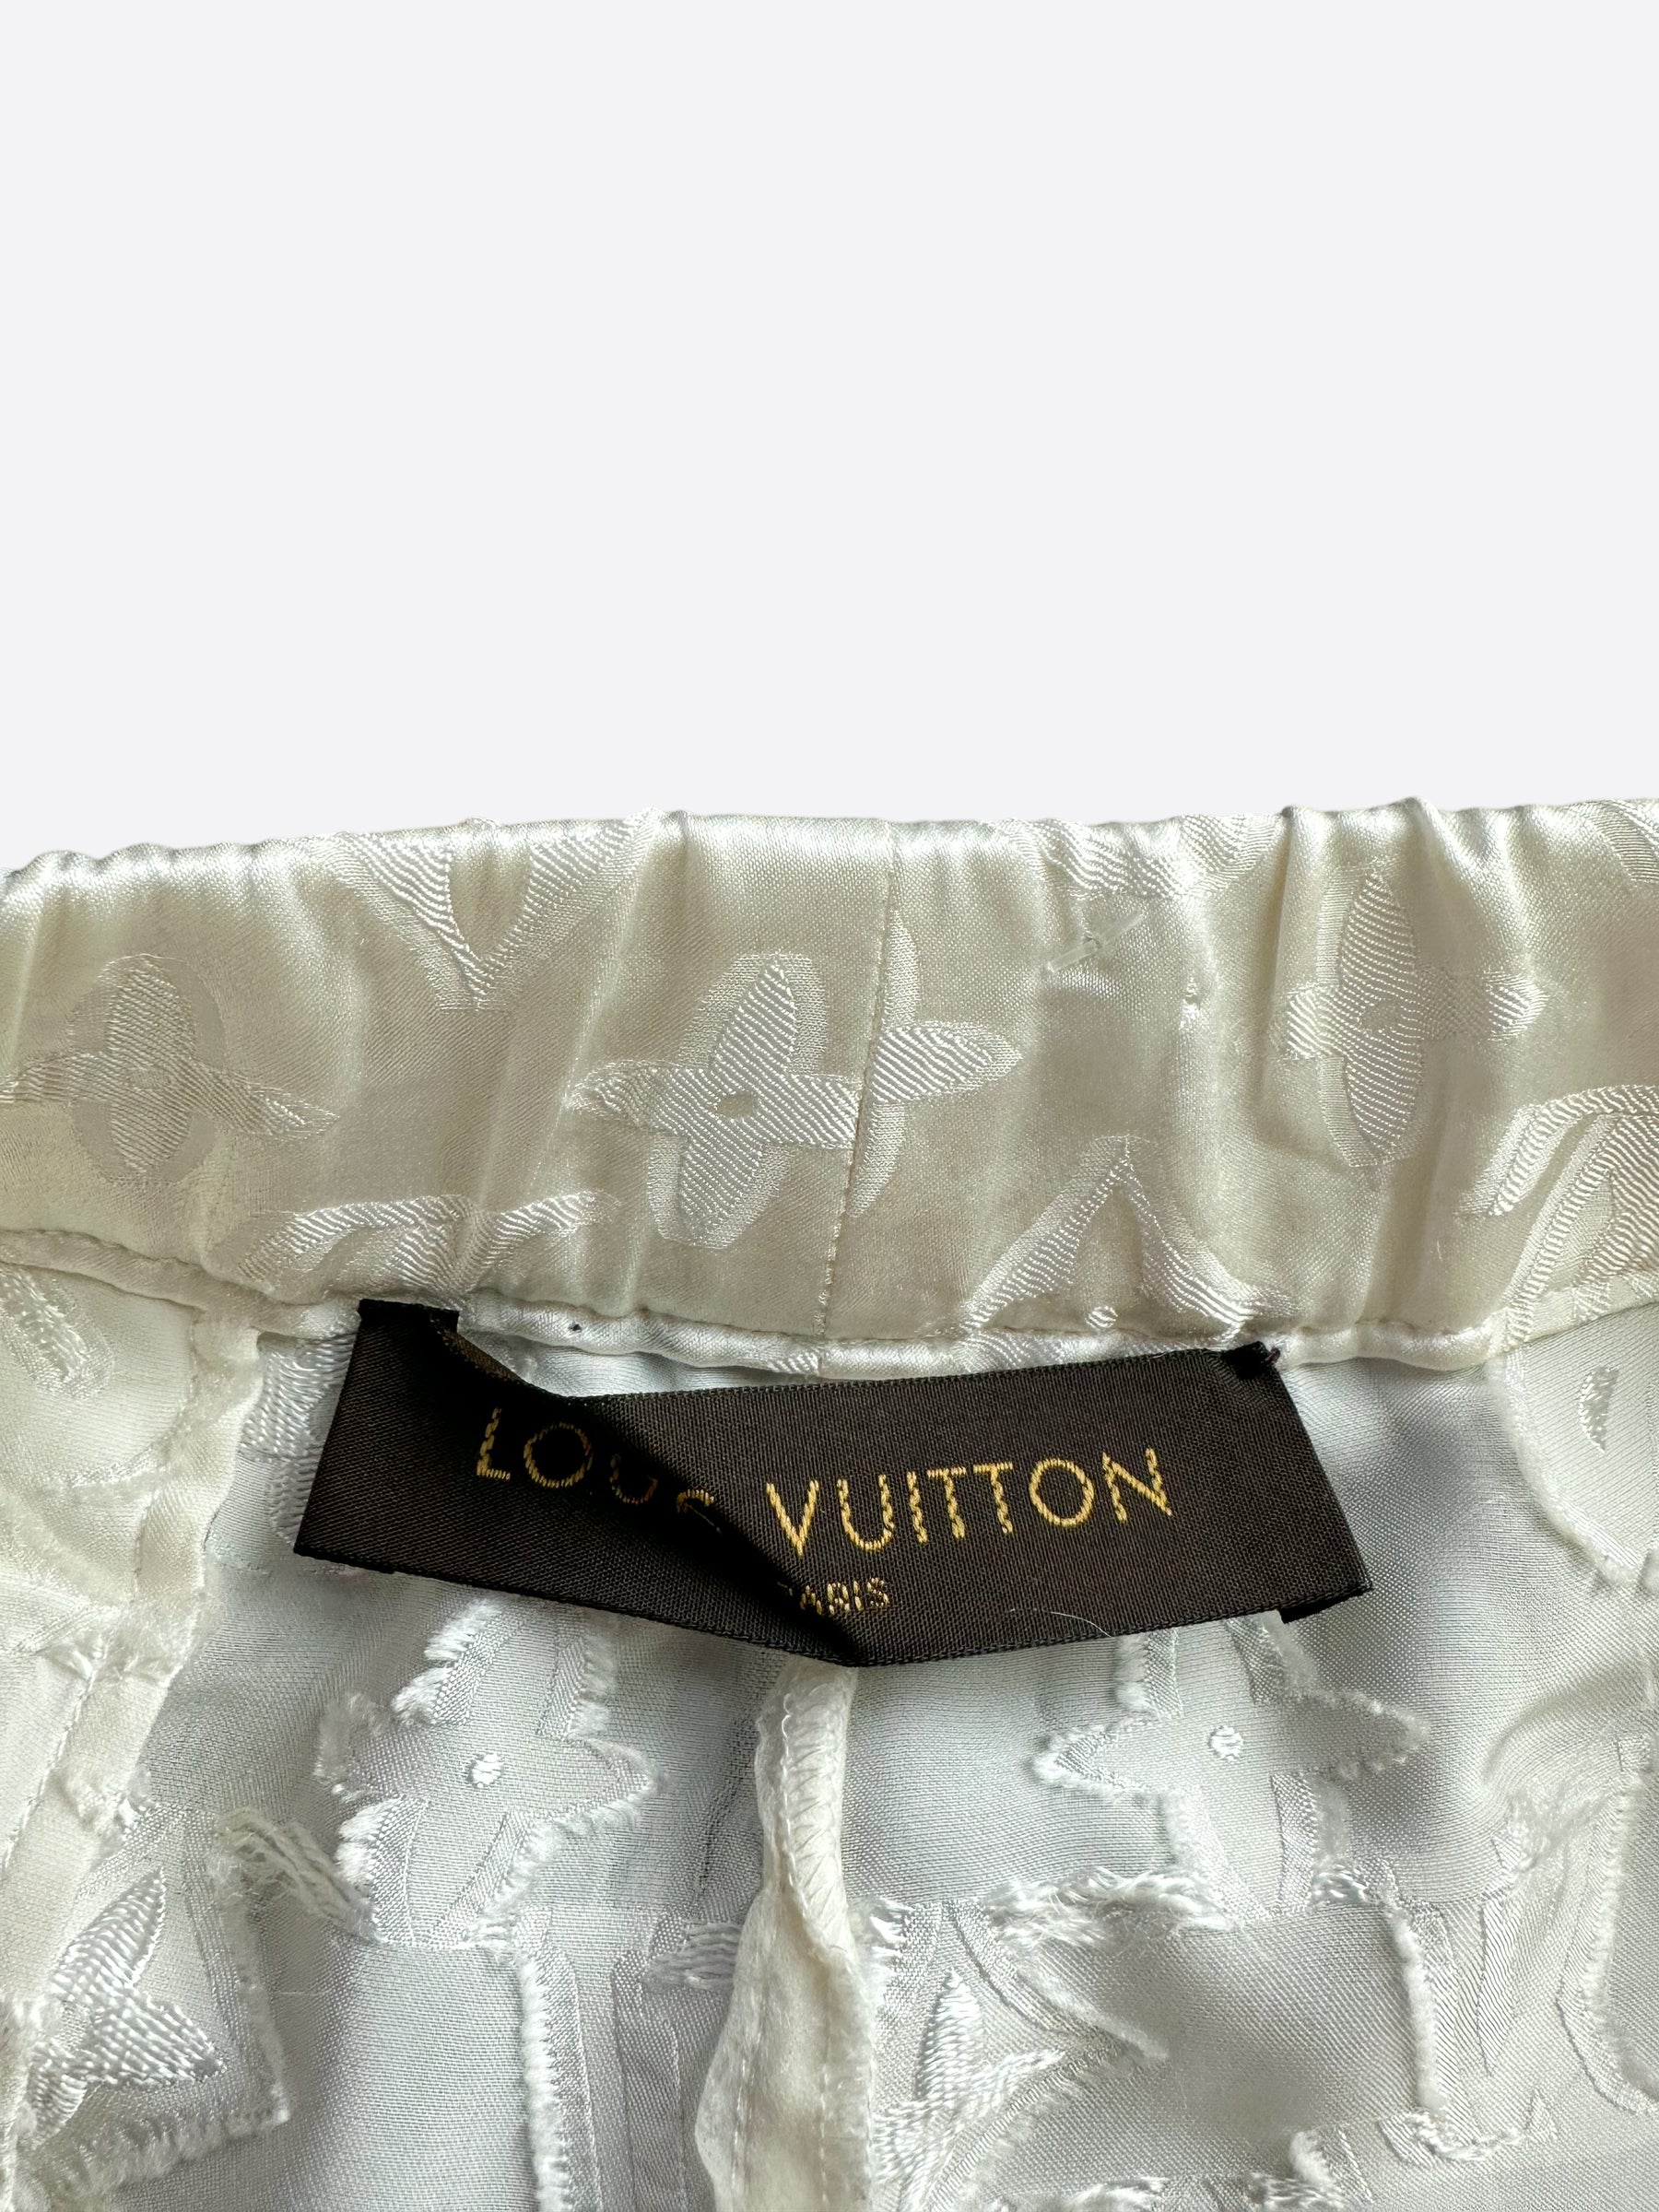 lv #Louis Vuitton#pajamas#casual#pajama pants#classic logo